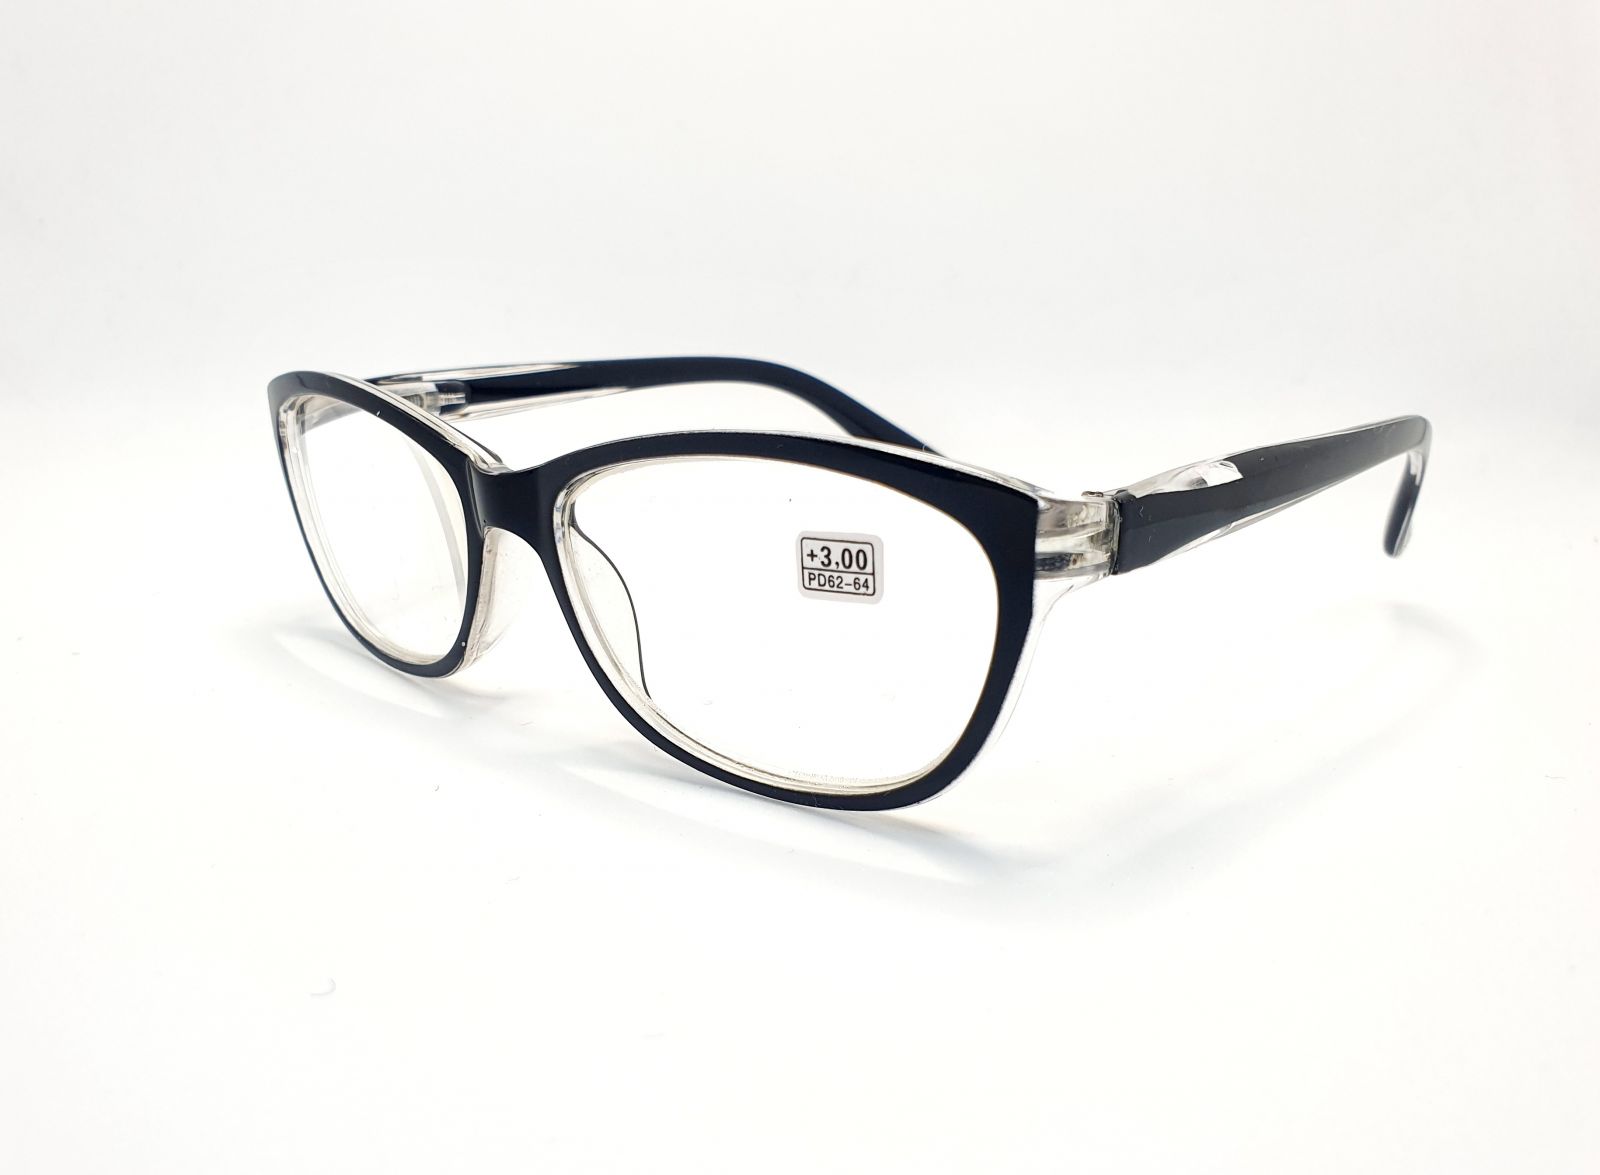 Dioptrické brýle 9537 /+3,00 černé